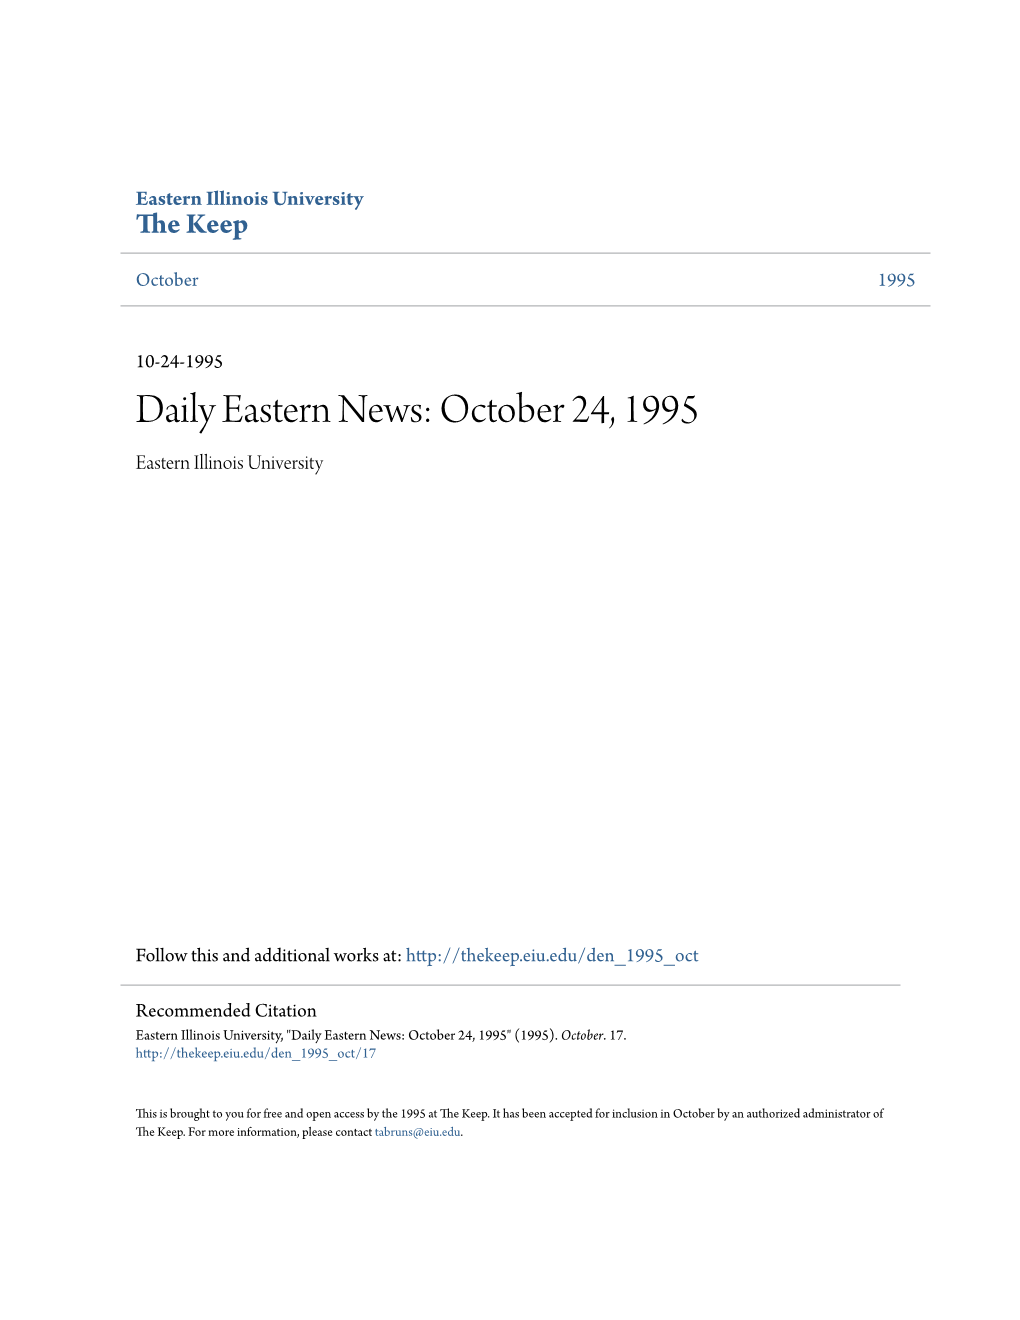 October 24, 1995 Eastern Illinois University